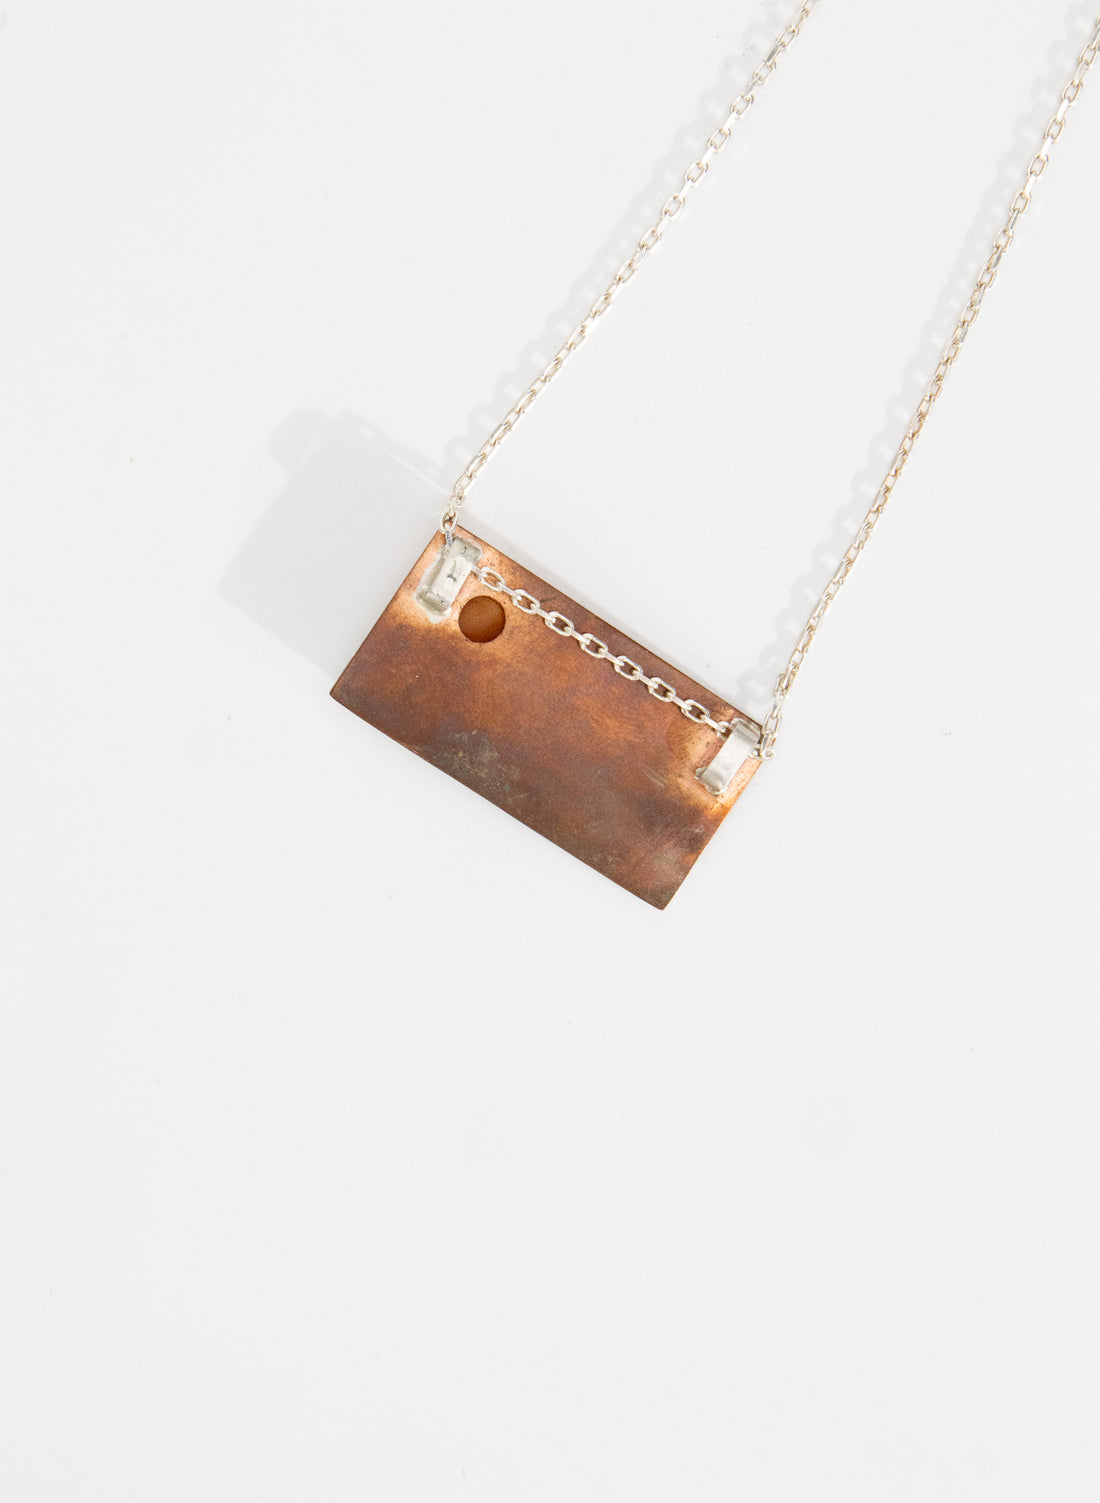 Copper and Silver Taranaki Necklace